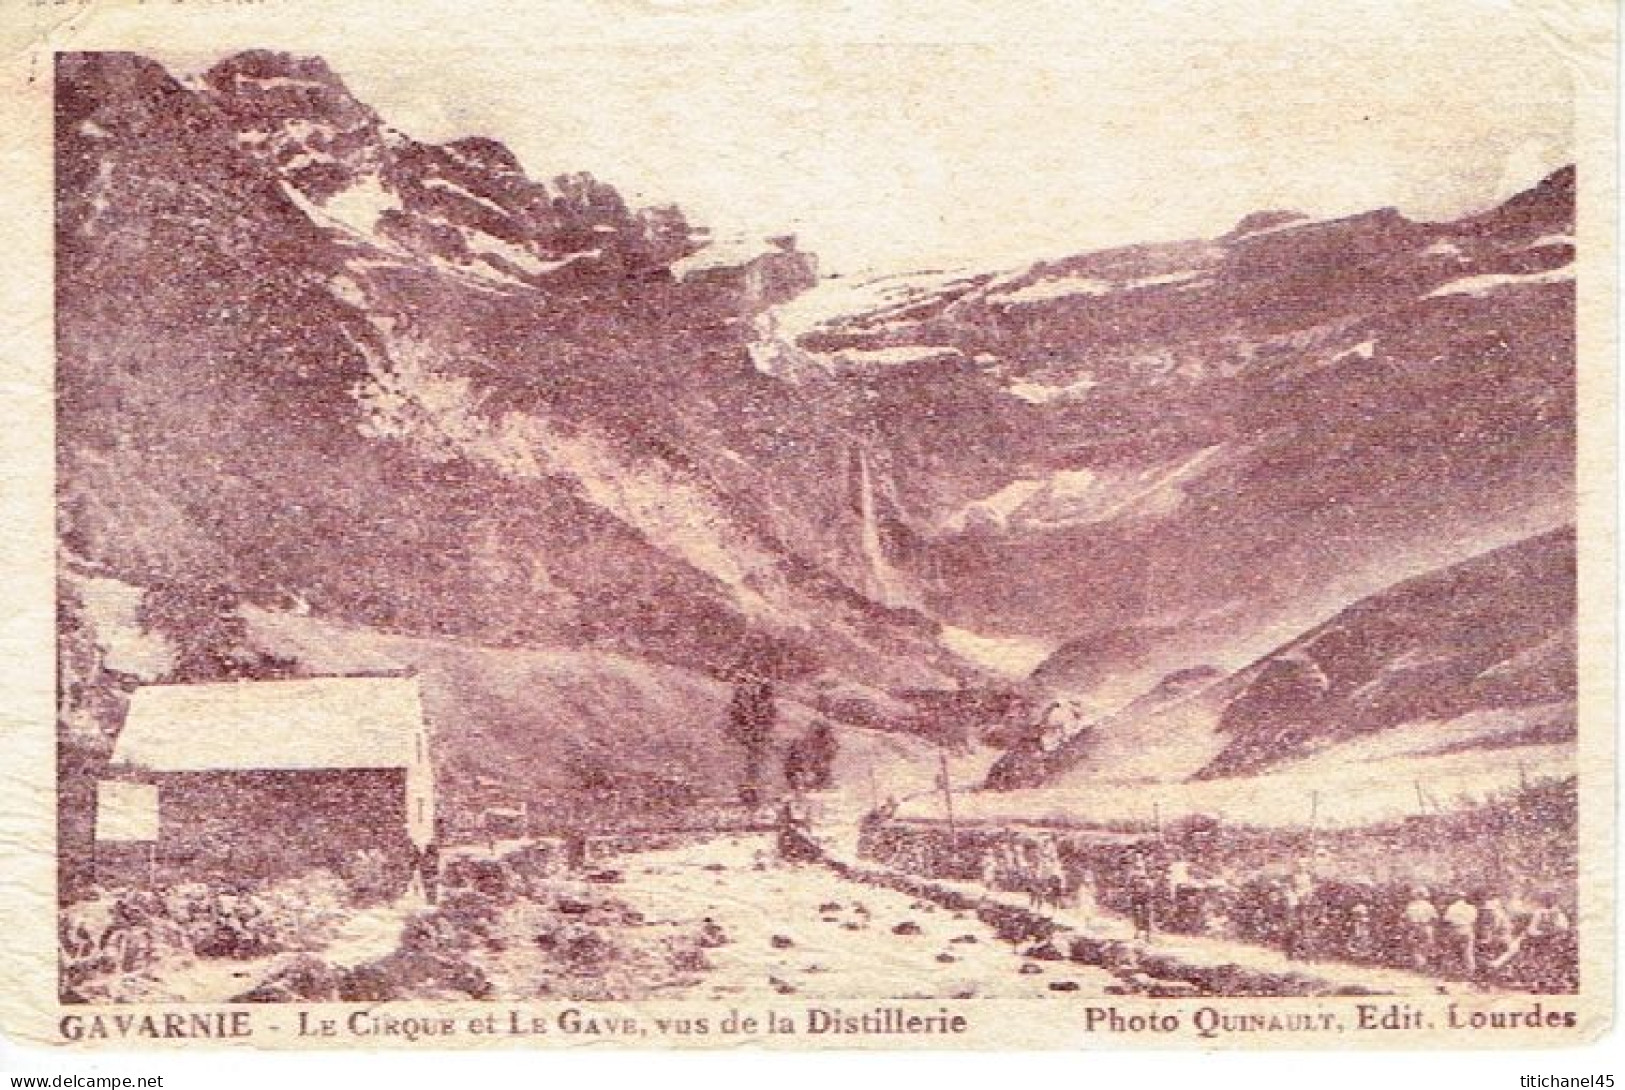 Carte Parfum PARFUMERIE DU MARBORE - Distillerie De Fleurs Et Plantes Des Pyrénées à GAVARNIE - Oud (tot 1960)